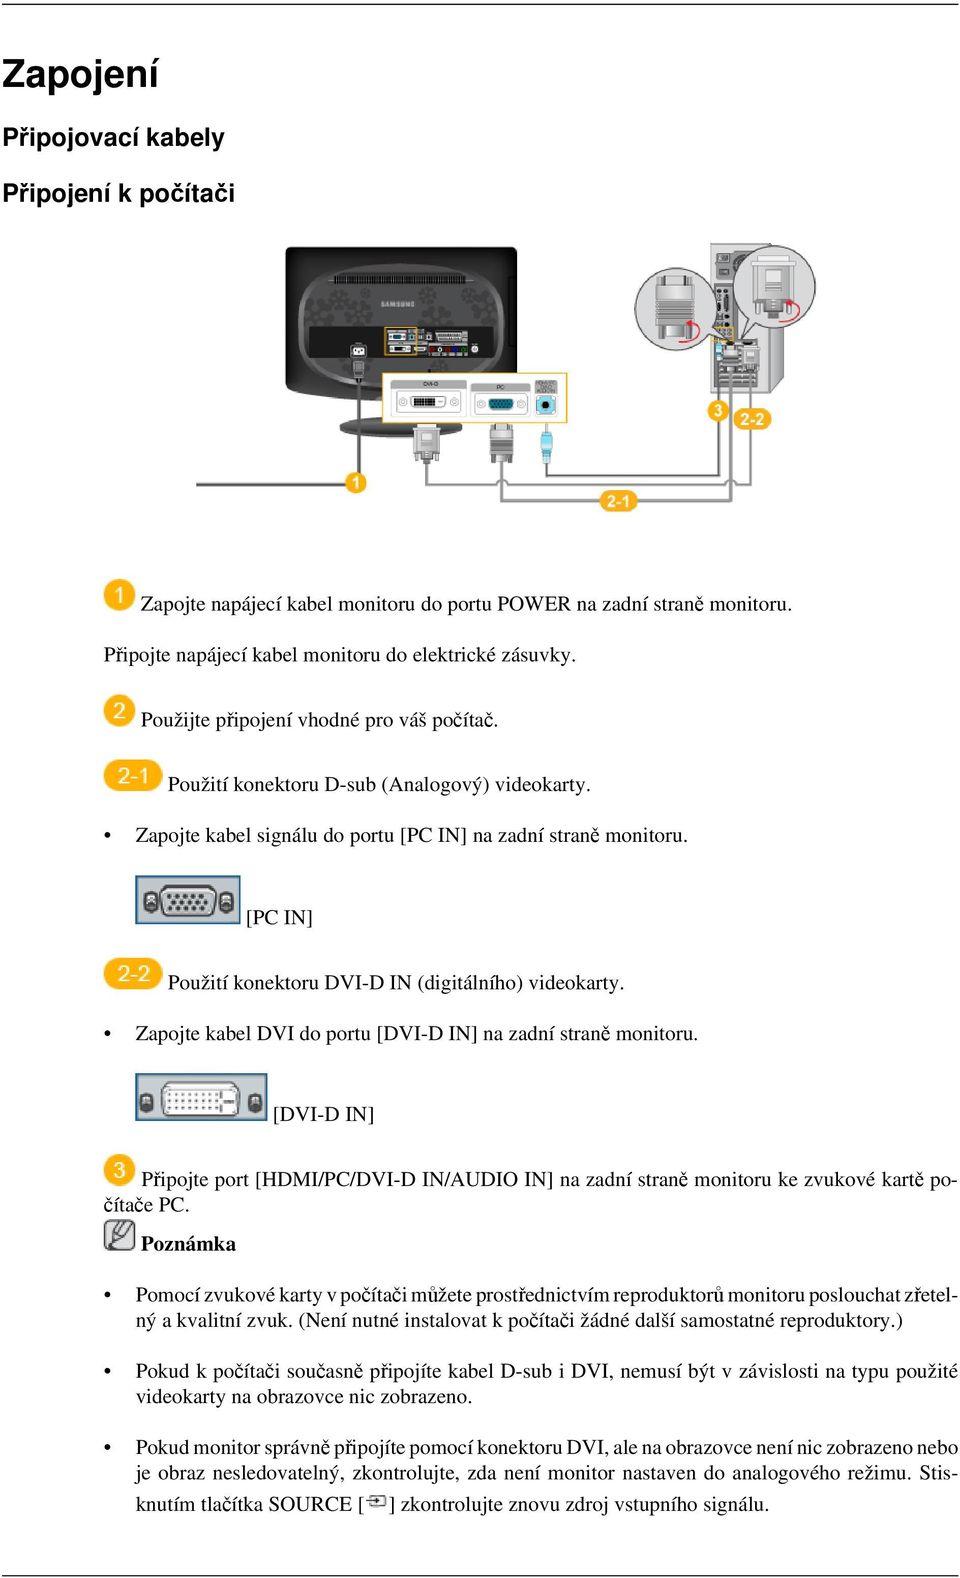 [PC IN] Použití konektoru DVI-D IN (digitálního) videokarty. Zapojte kabel DVI do portu [DVI-D IN] na zadní straně monitoru.